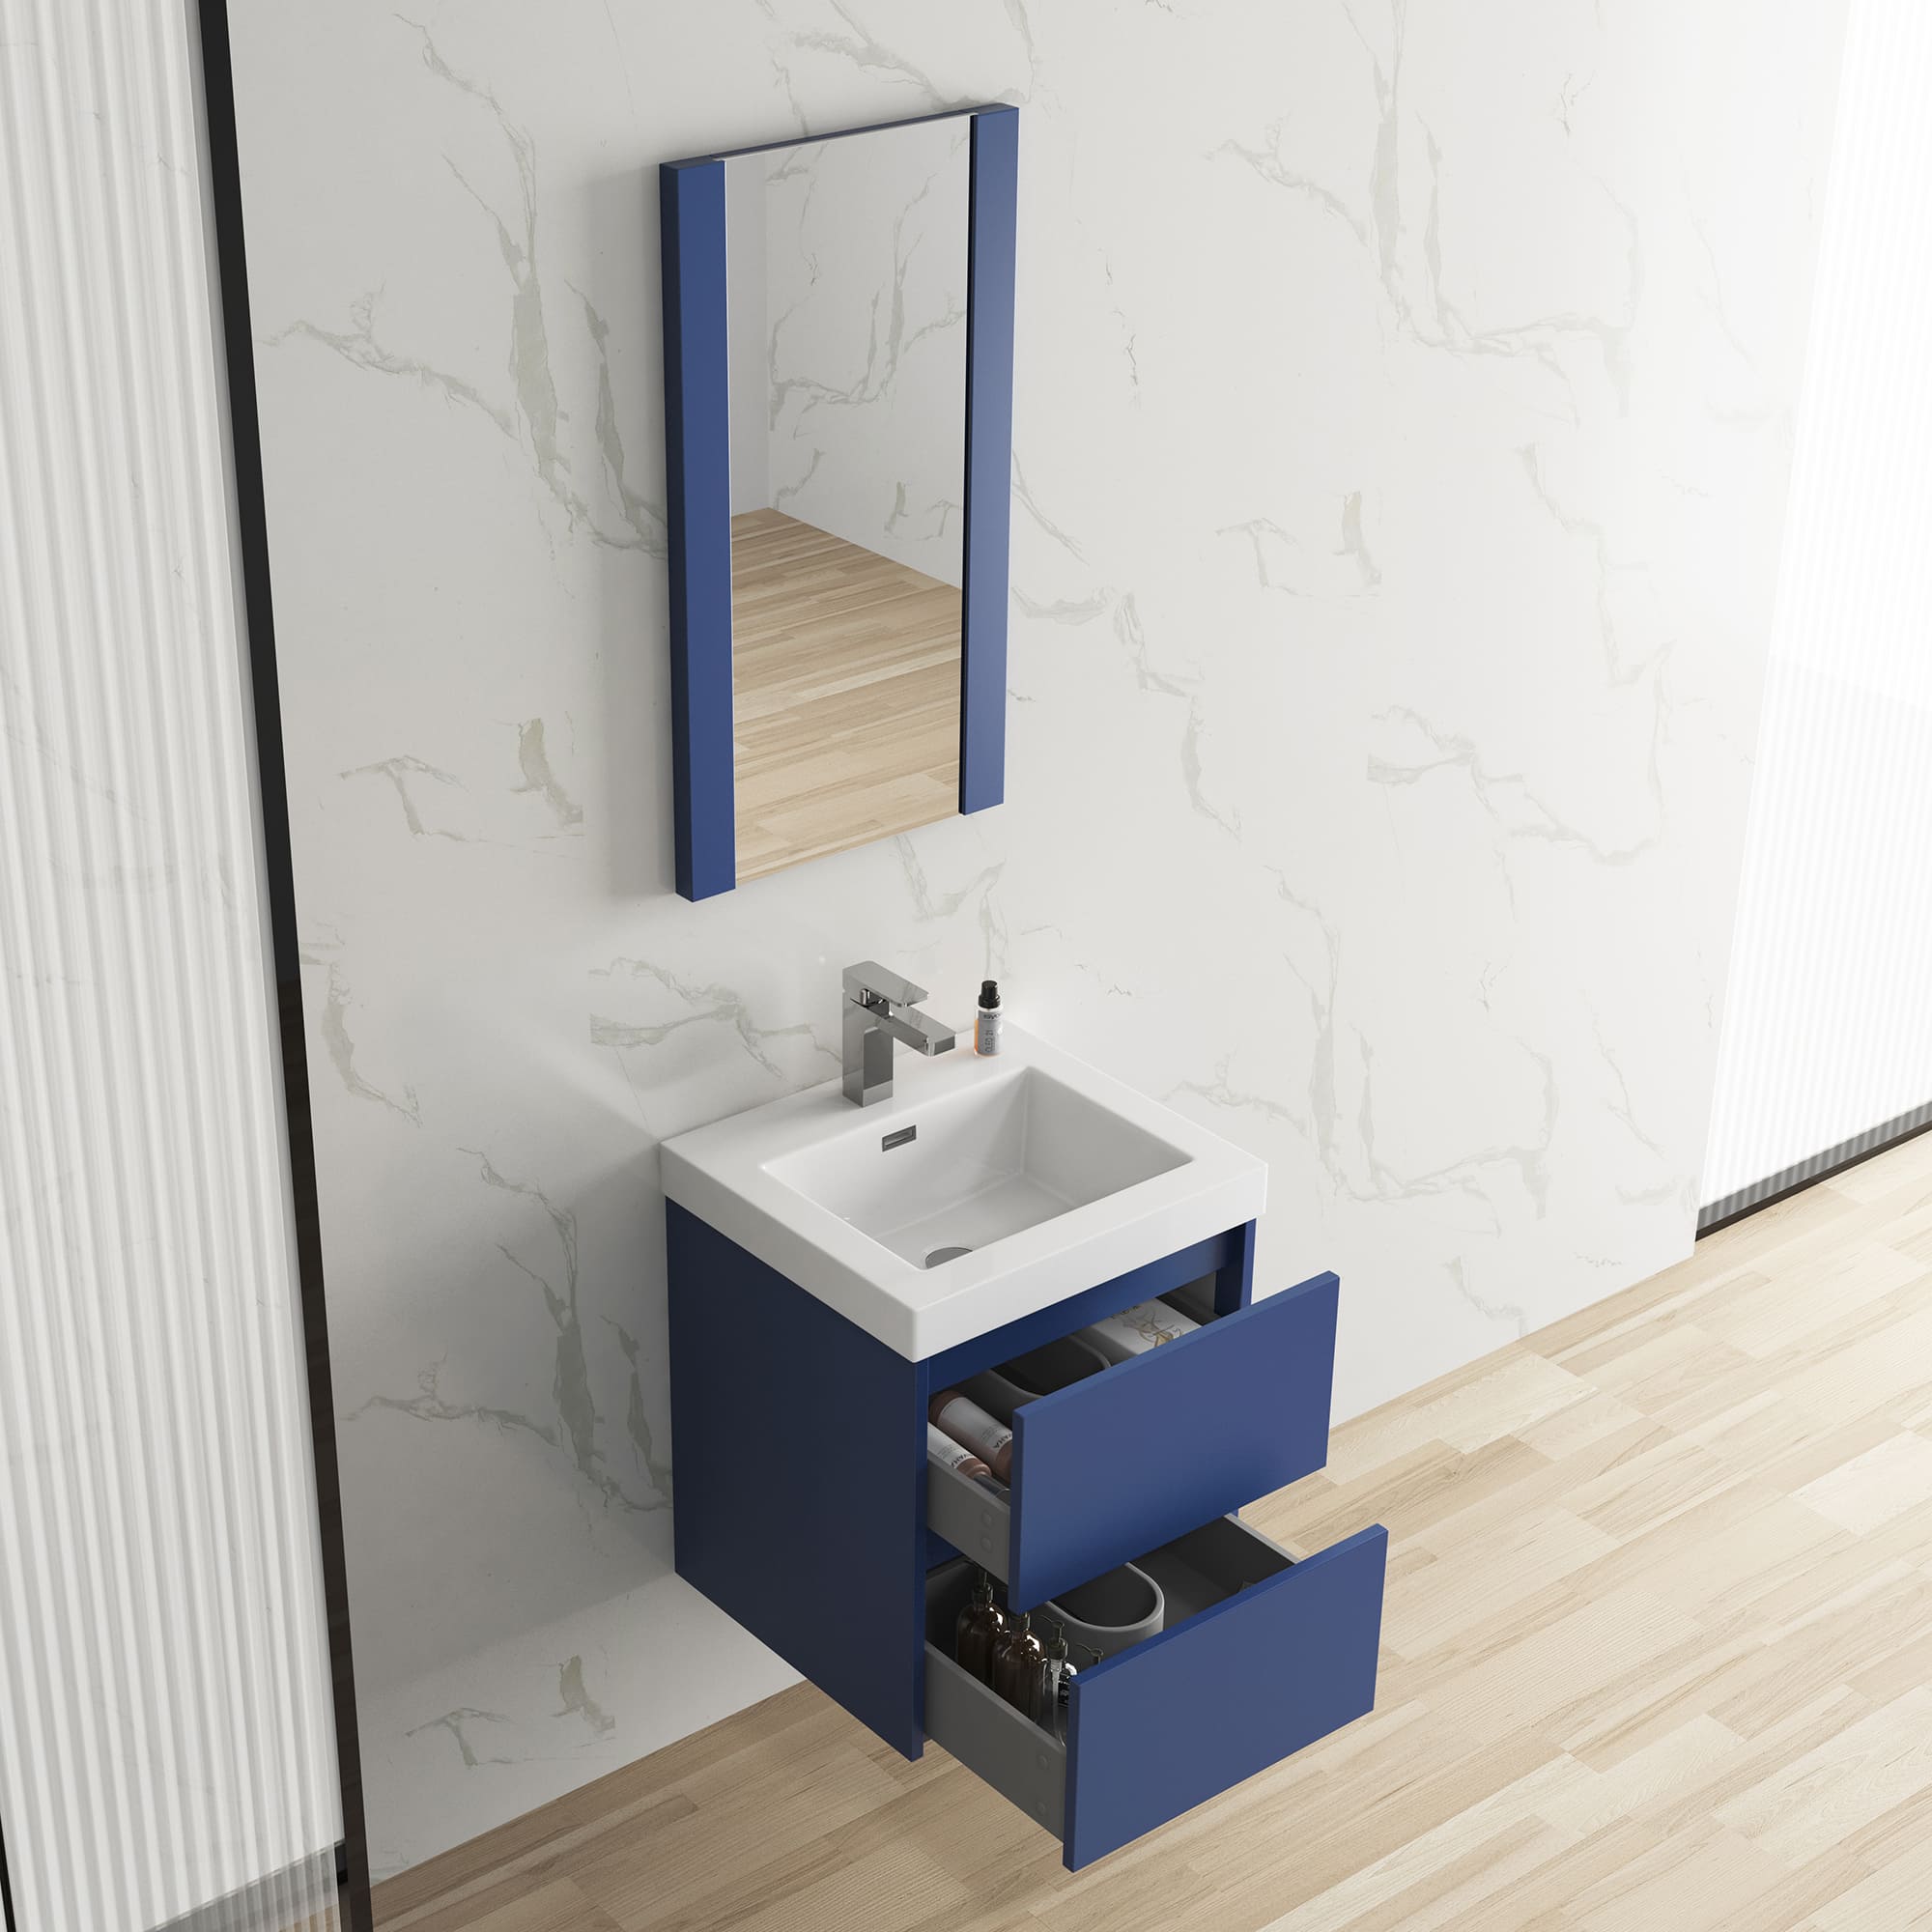 Valencia 20" Bathroom Vanity  #size_20"  #color_navy blue